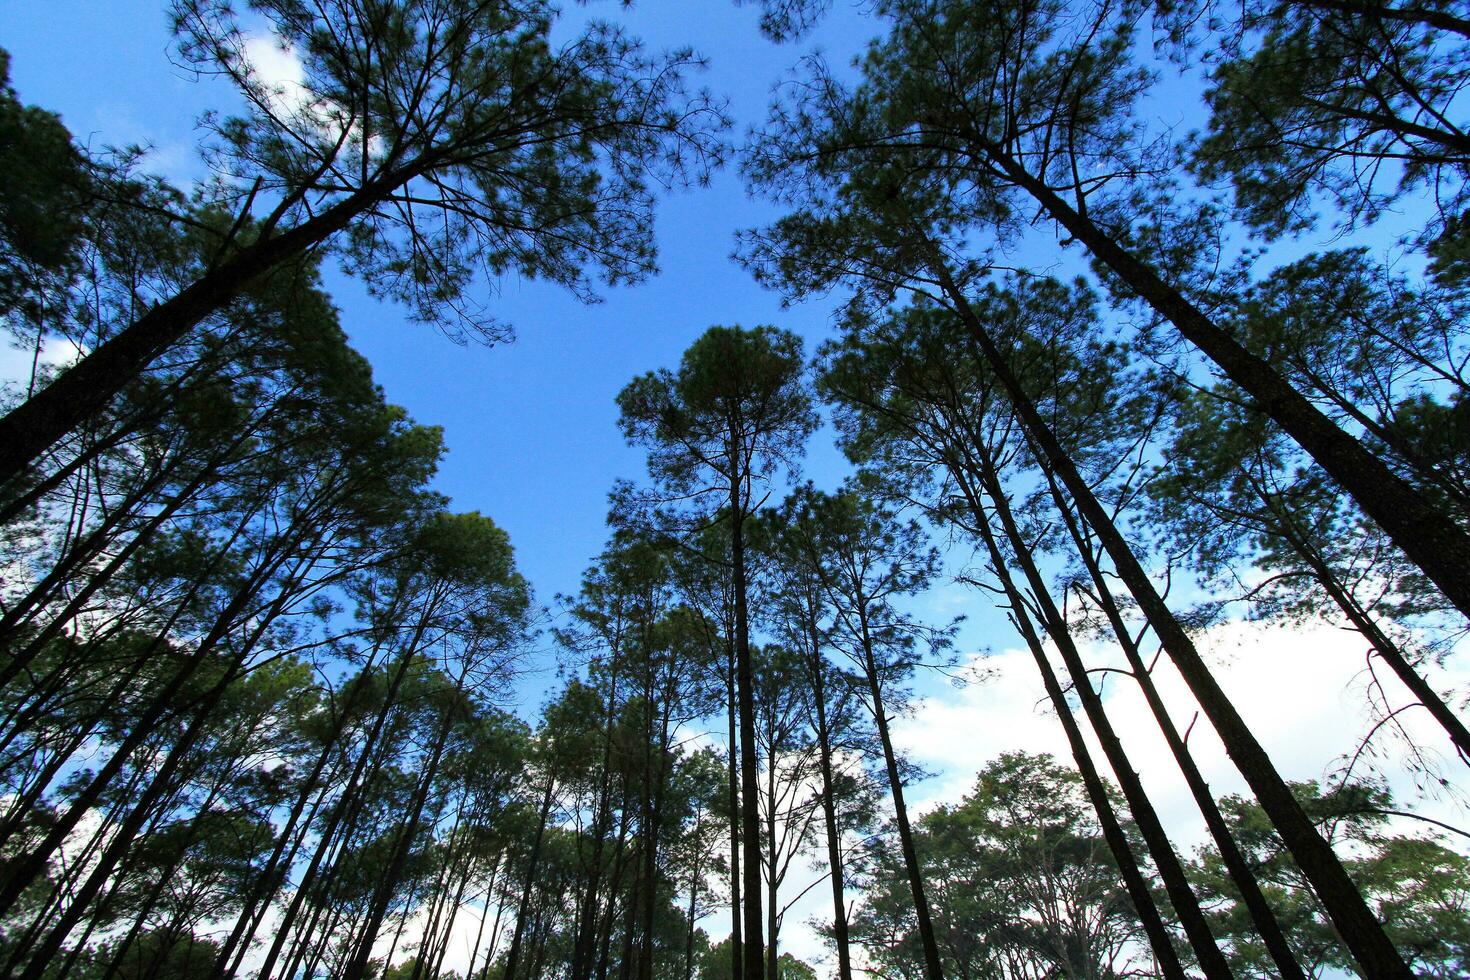 groep van hoog pijnboom boom in diep oerwoud of Woud met Doorzichtig blauw lucht en wit wolken achtergrond Bij phu hin rong kla nationaal park, phitsanulok, Thailand. natuur behang en top visie van bovenstaand hoofd. foto